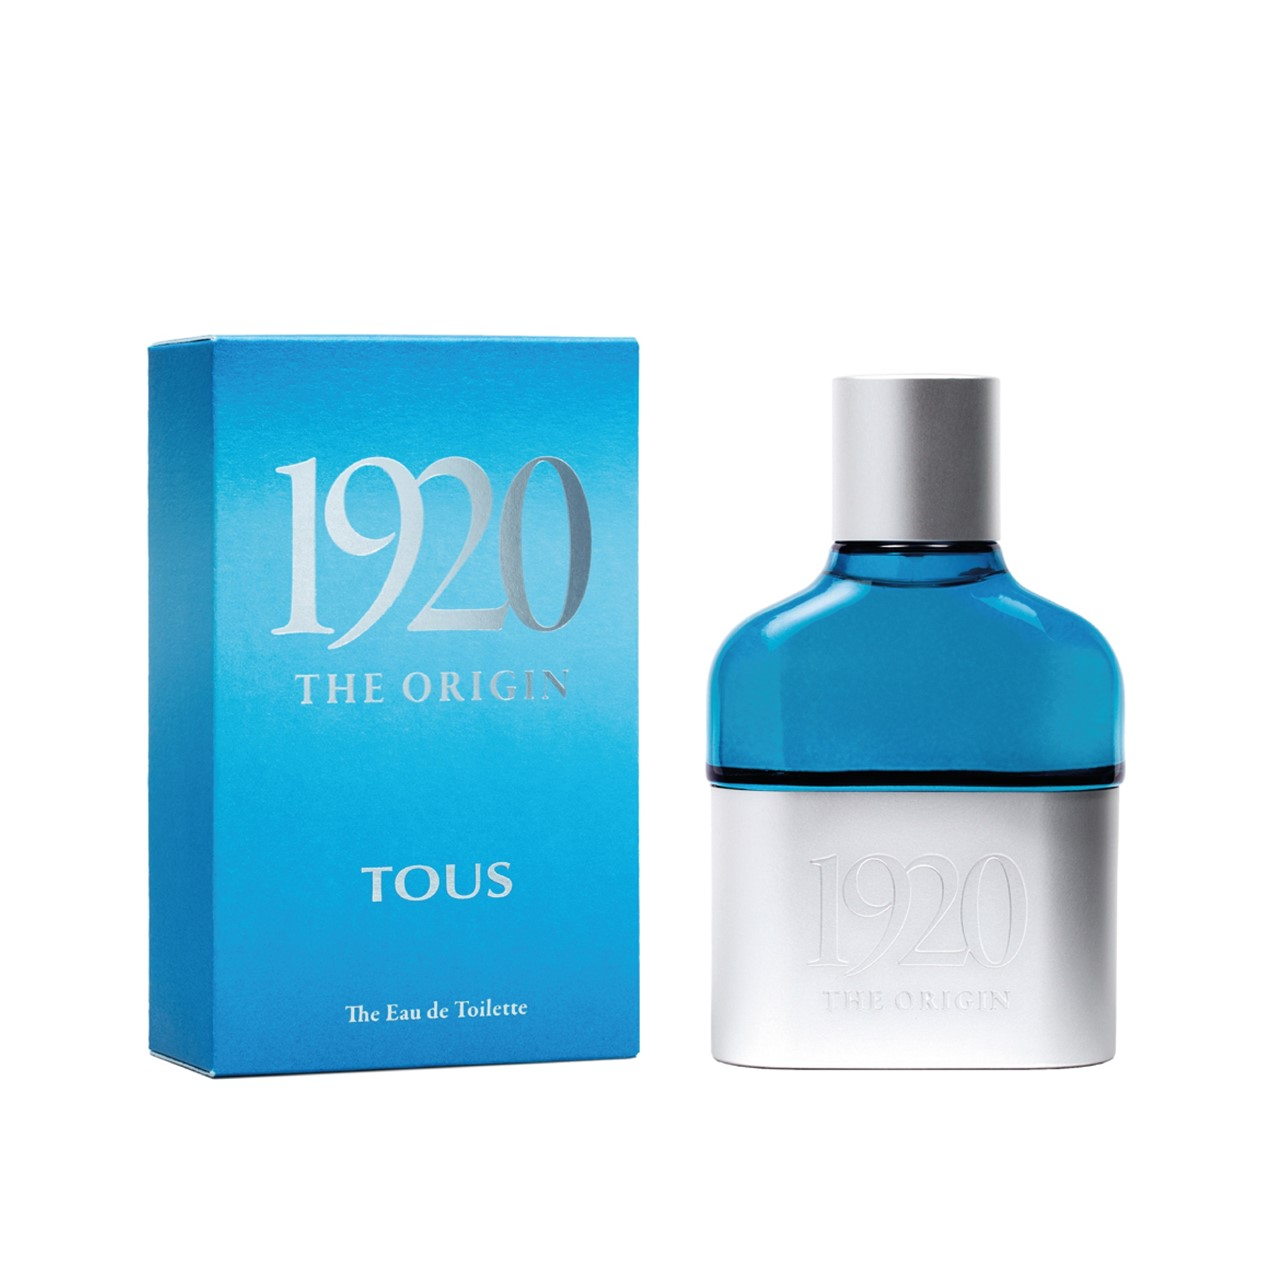 Buy Tous 1920 The Origin Eau de Toilette 60ml (2.0fl oz) · USA